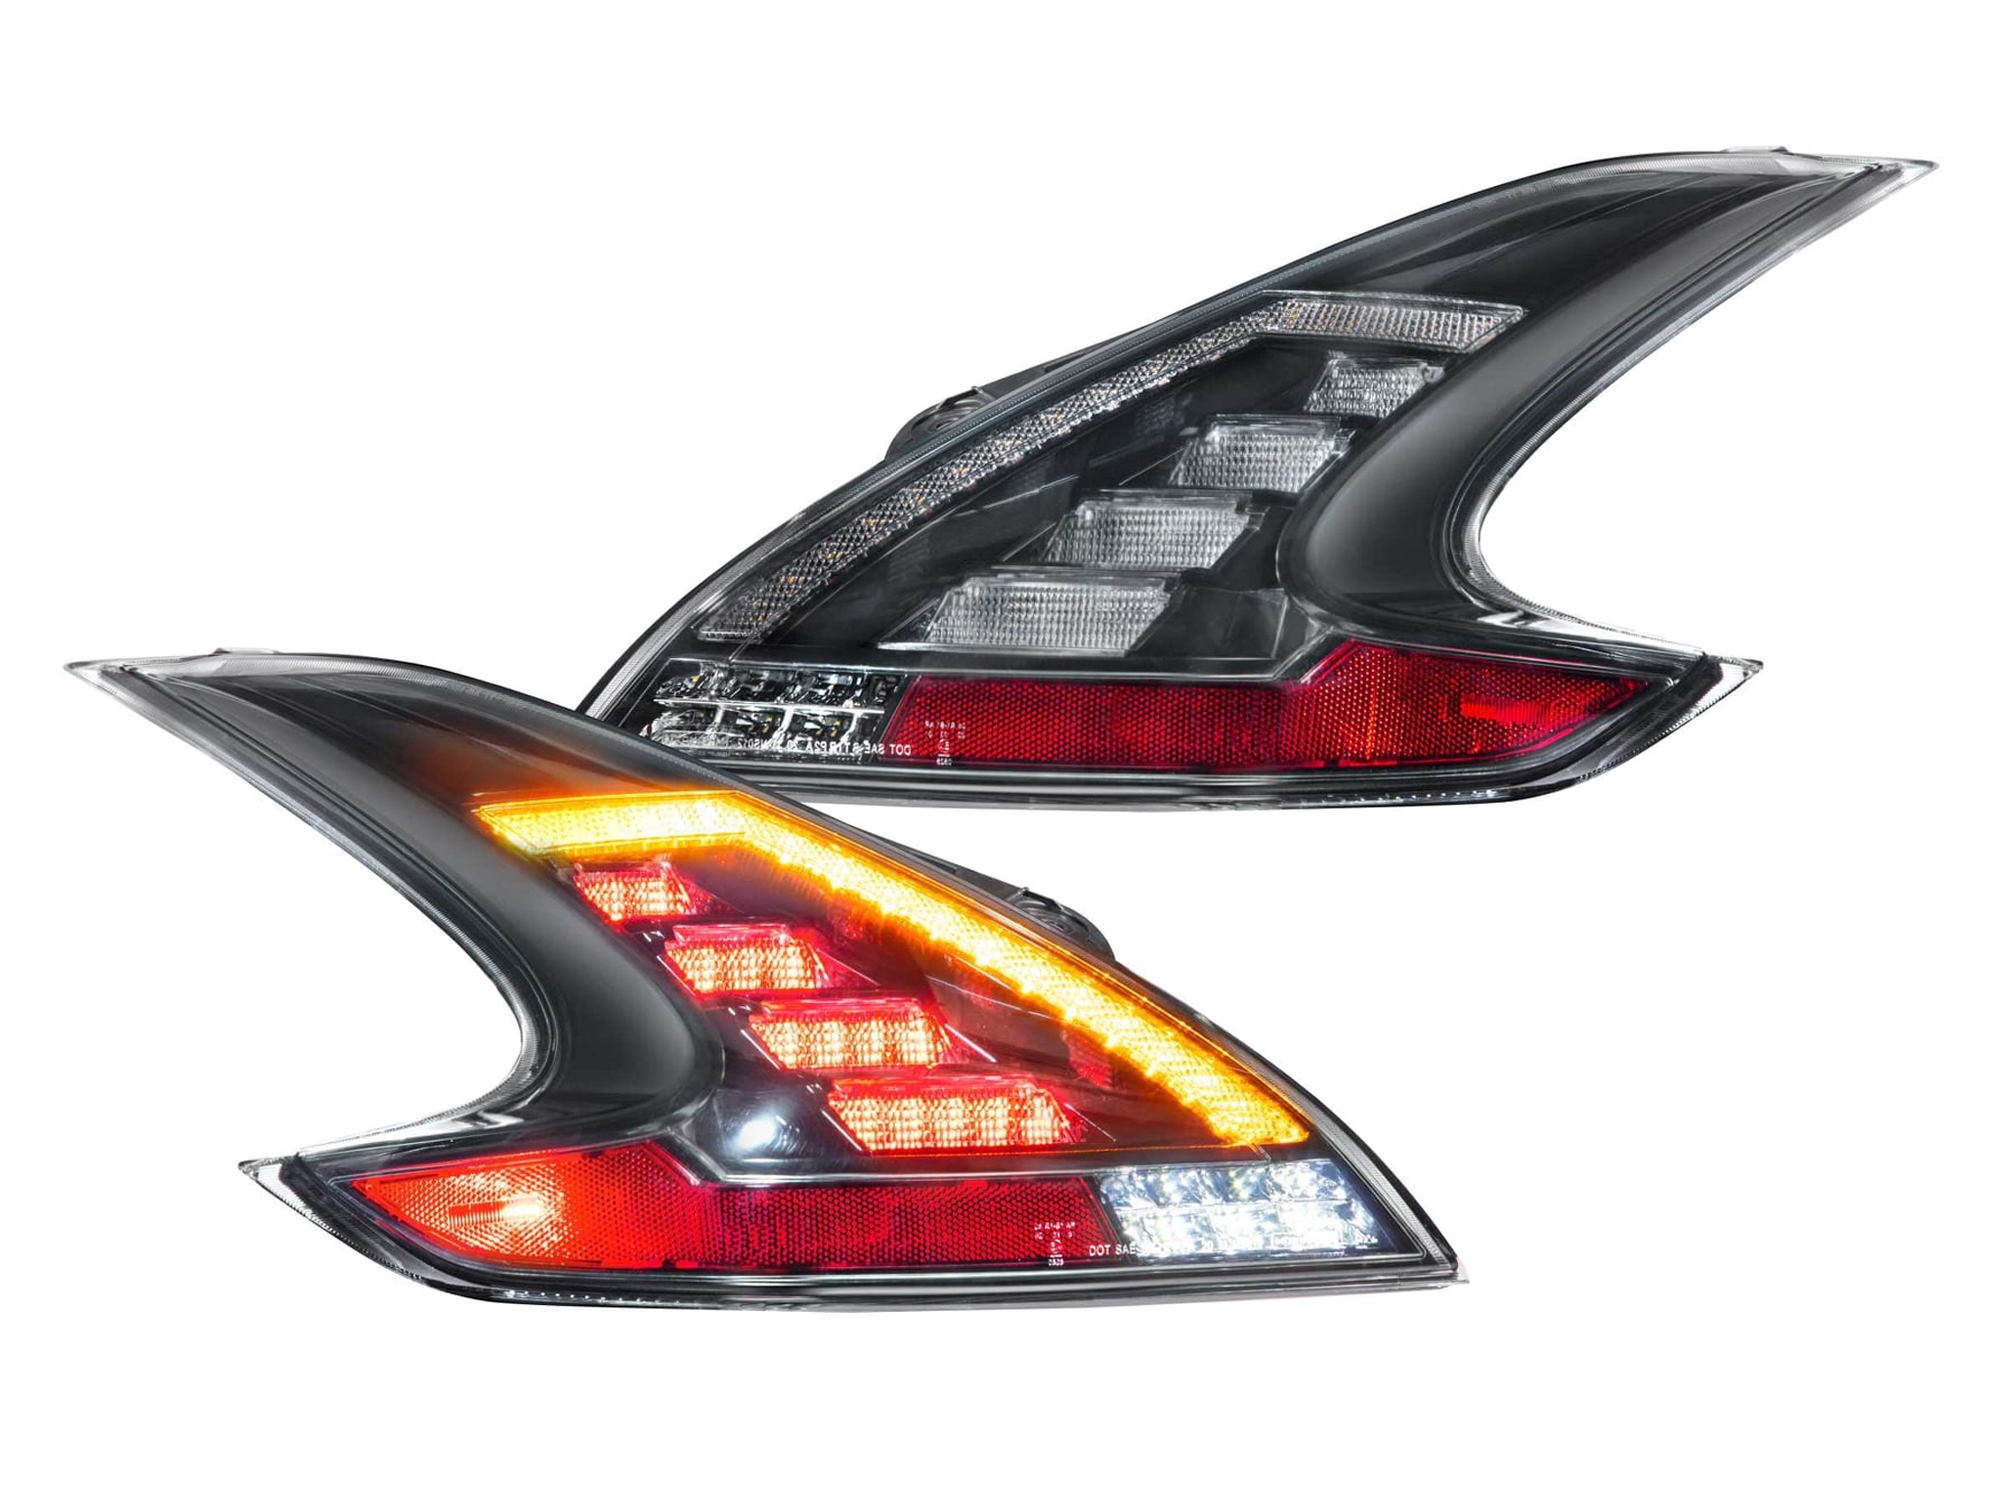 Morimoto 370Z xB LED Tail Lights - Pair